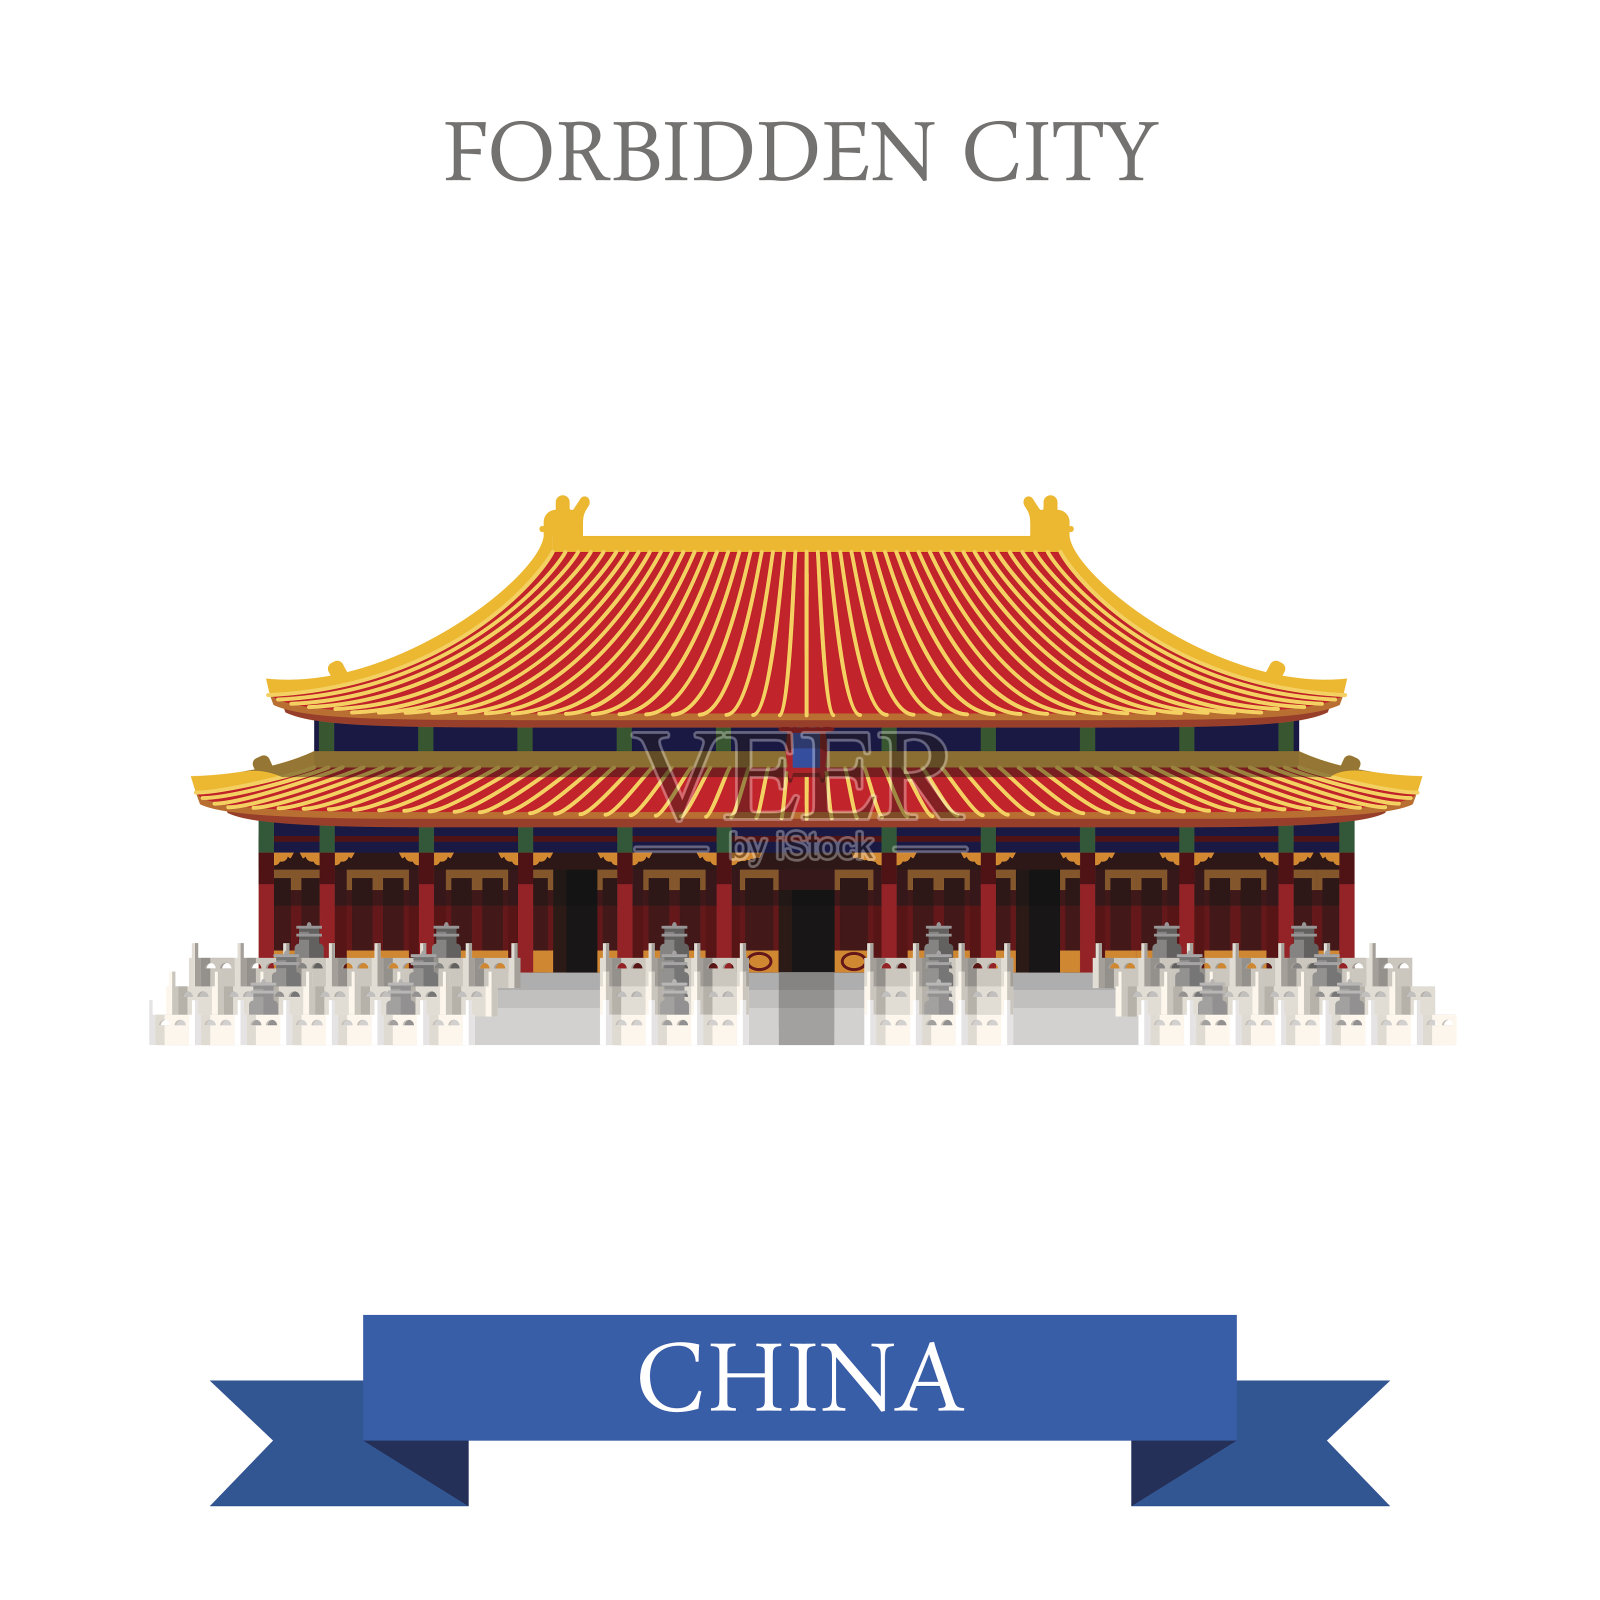 紫禁城是中国北京从明到清年间的皇宫。平面卡通风格的历史景点展示景点网站矢量插图。世界各国城市度假旅游观光亚洲亚洲华人收藏。插画图片素材